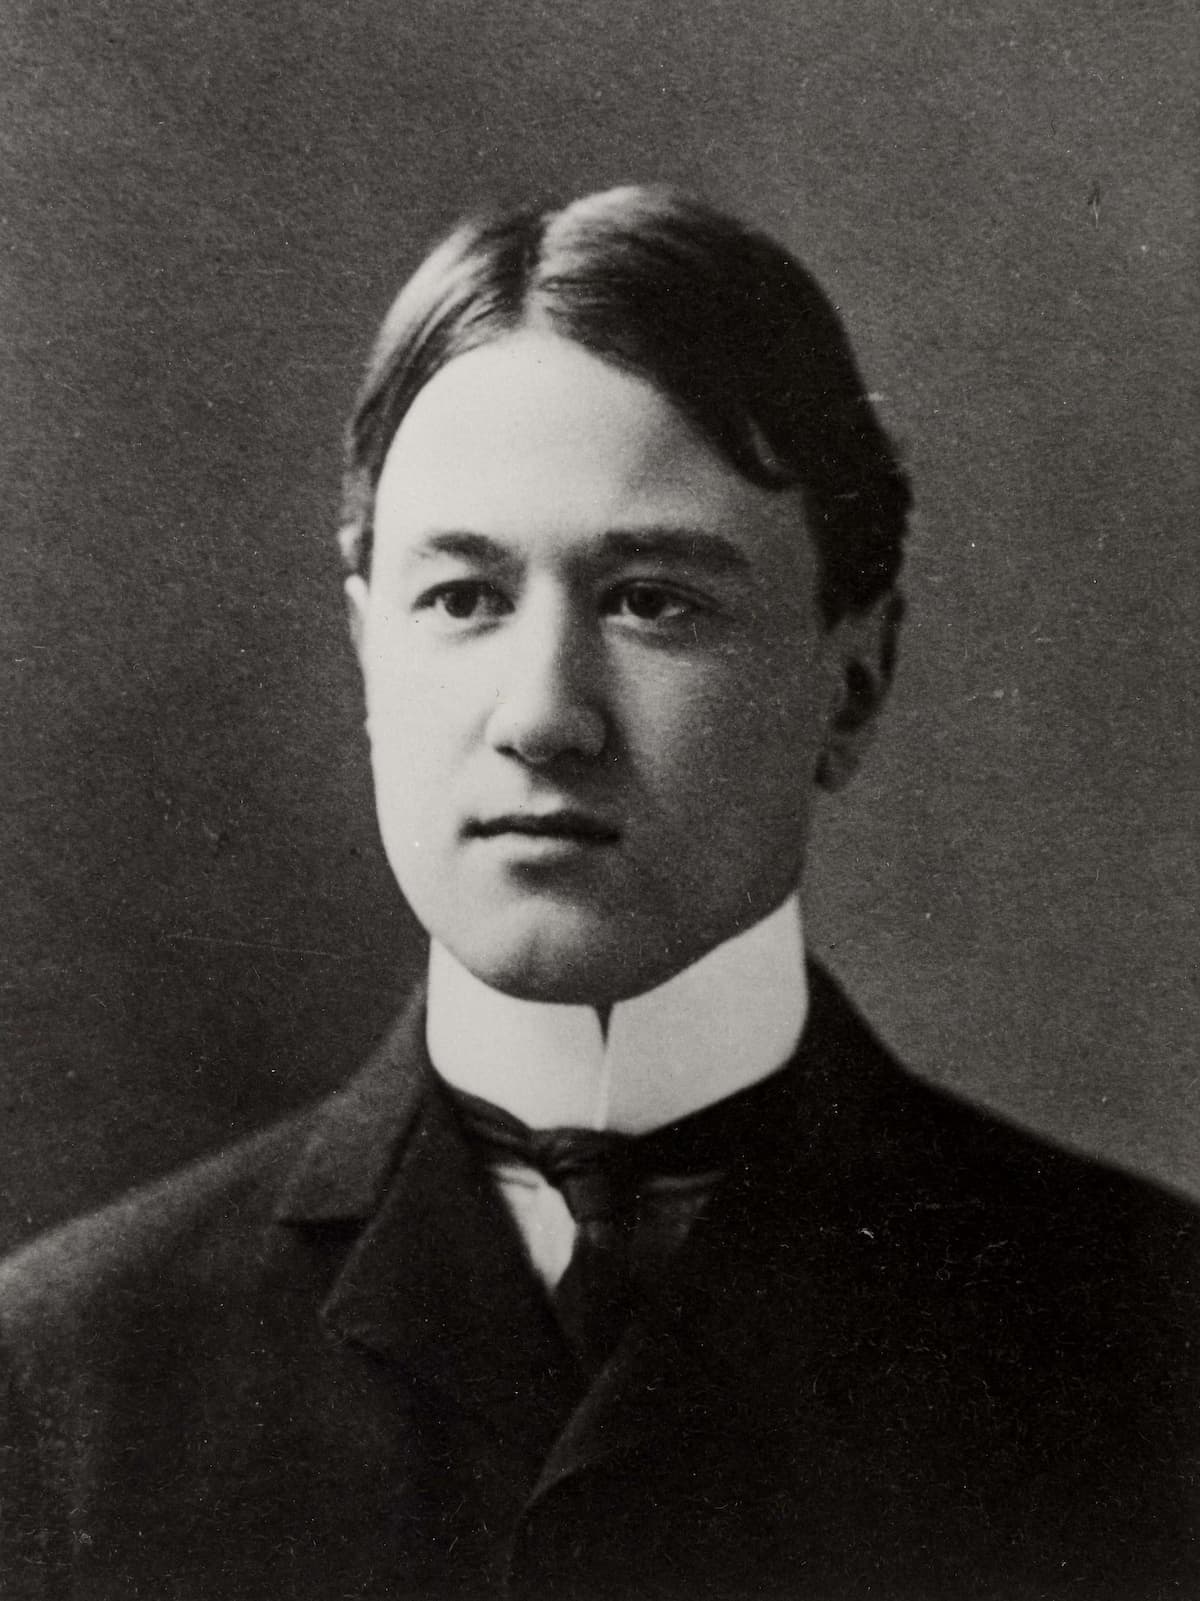 Charles Ives, graduation photo, 1898, Yale University